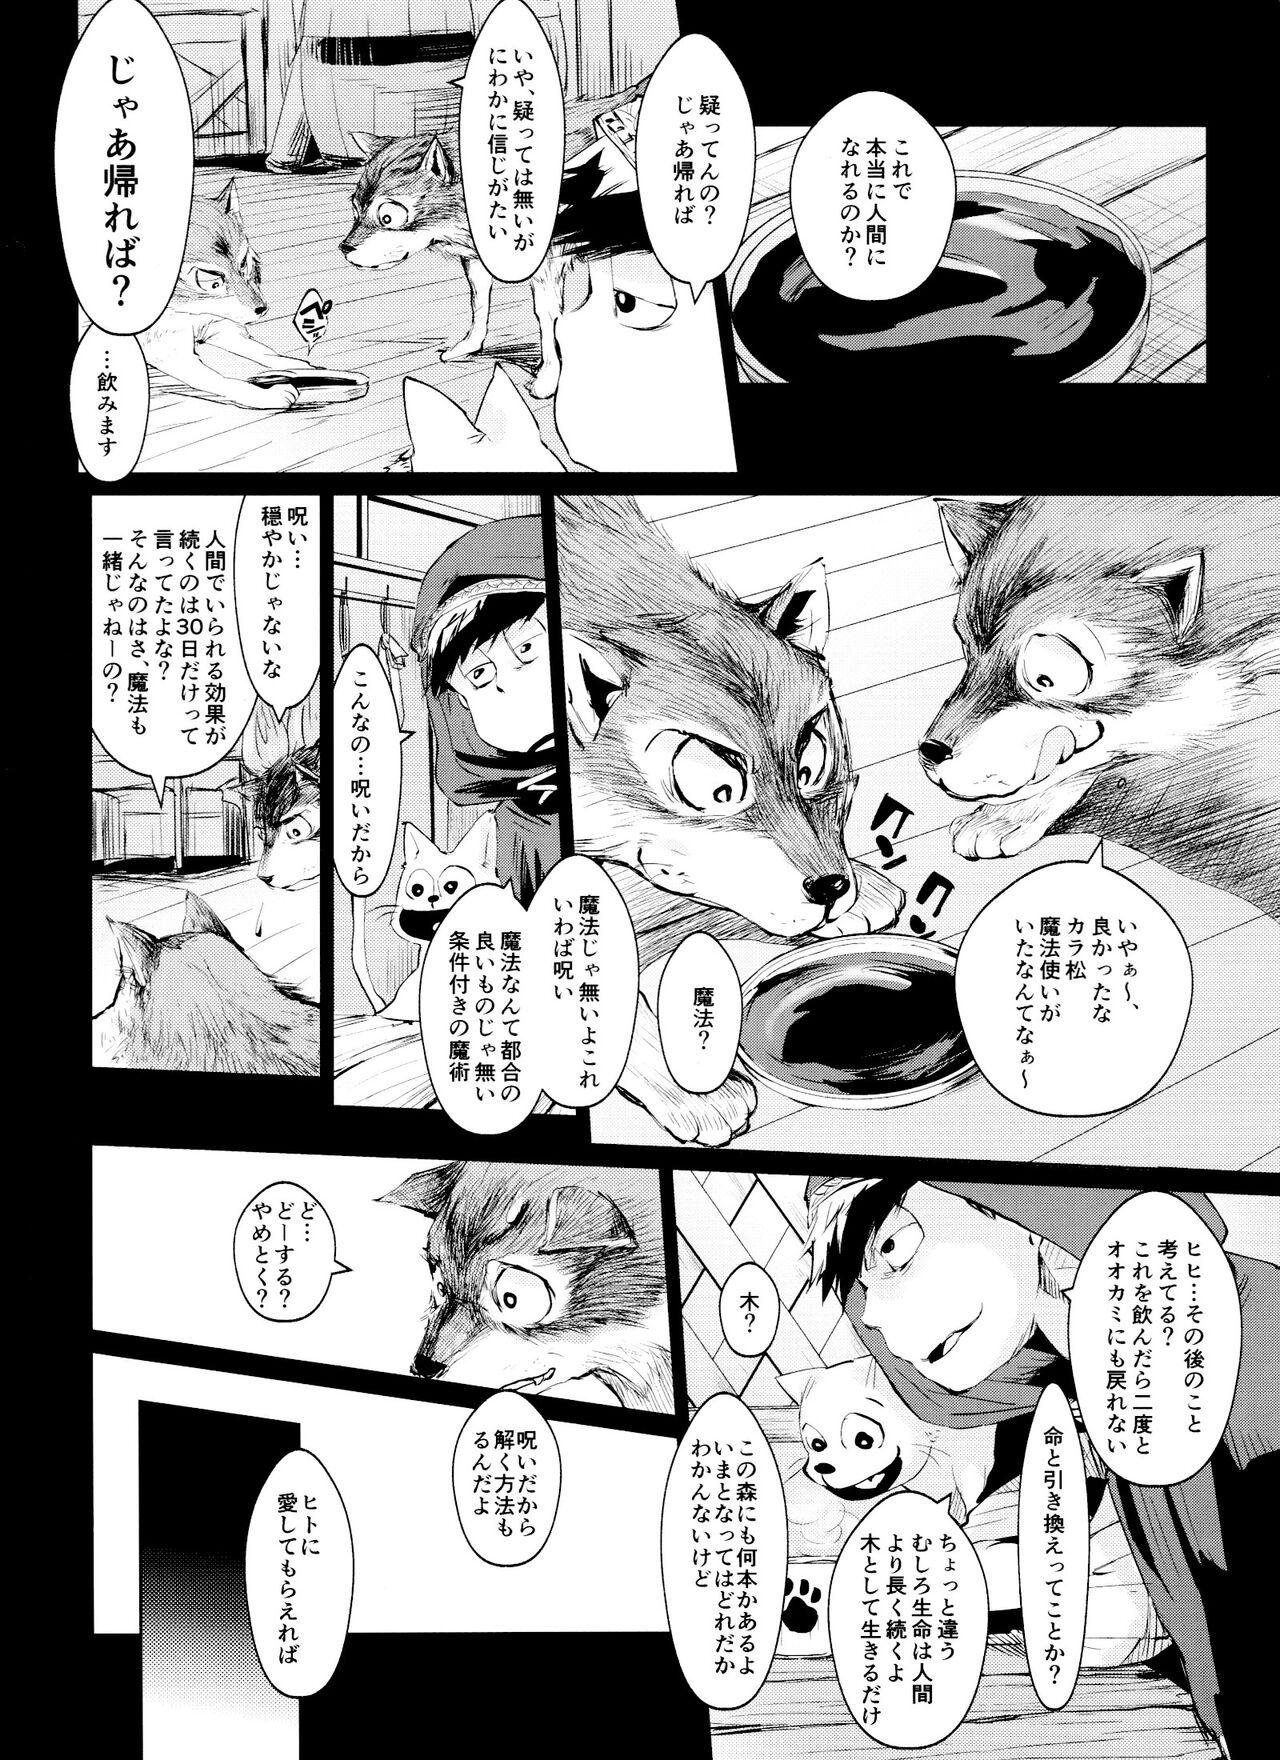 Tugging Boku no Ookami-san wa Aisaretakuta Shikata ga Nai - Osomatsu san Butt - Page 5